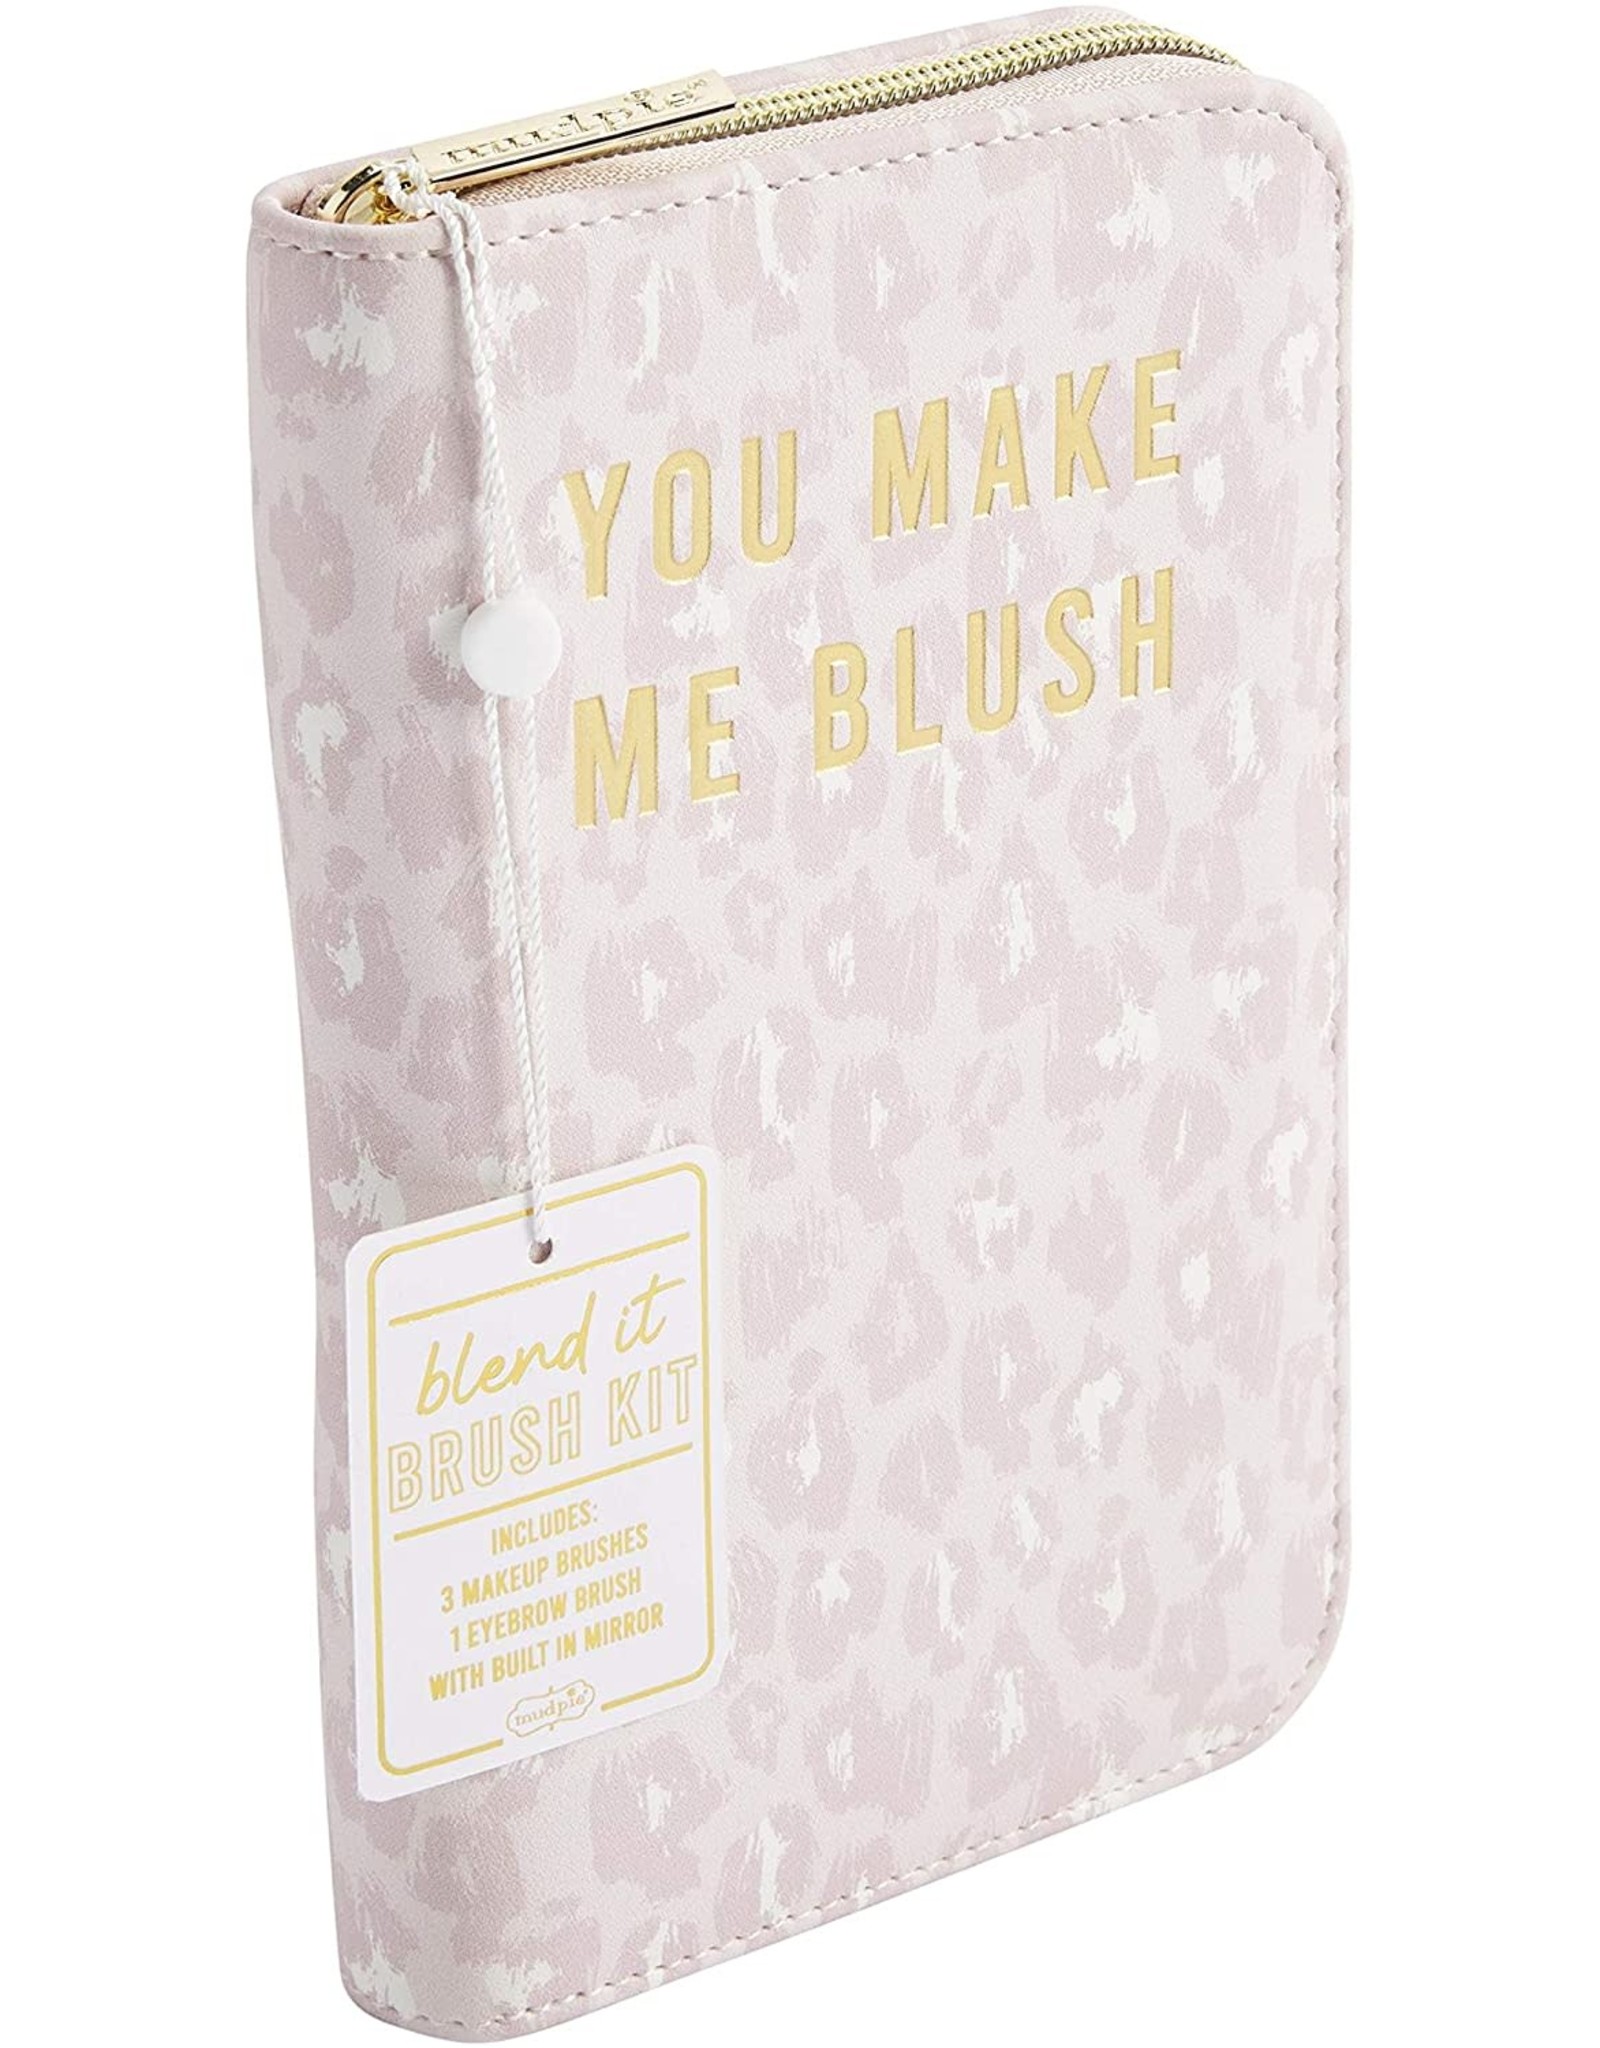 Mud Pie Make-Up Brush Kit - You Make Me Blush